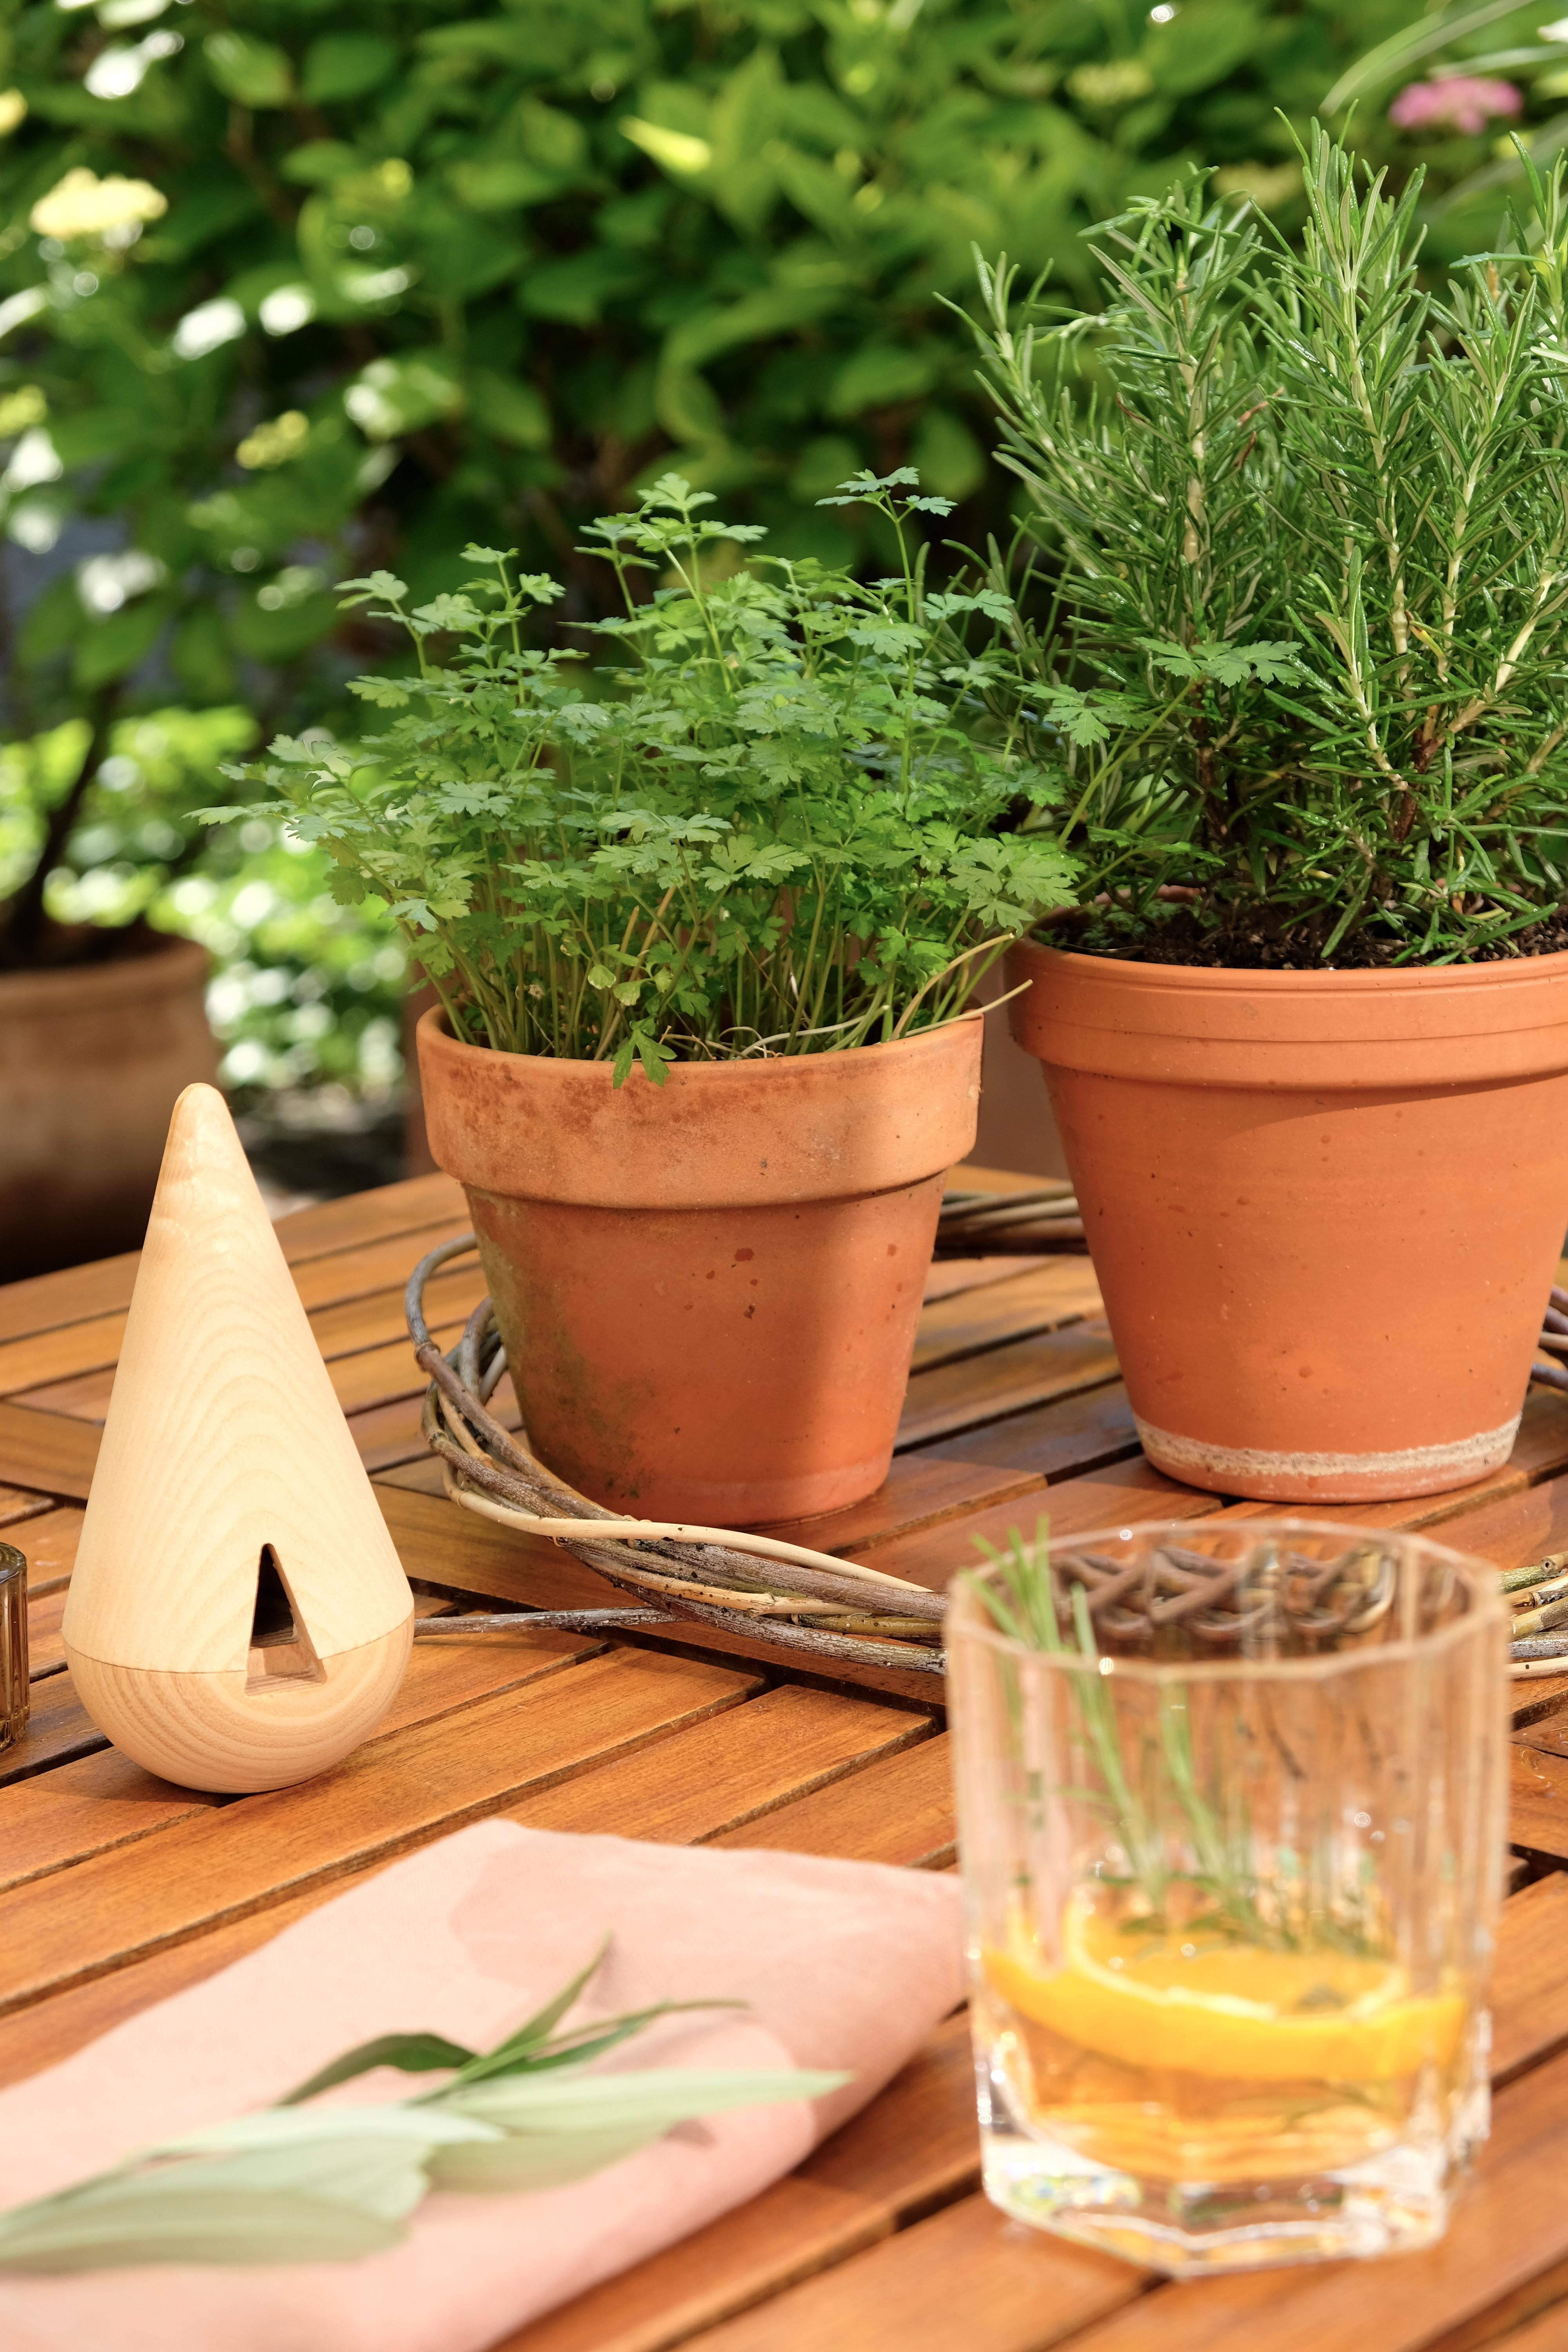 Kräutertöpfe und Räucherfiguren für den sommerlichen #Gartentisch
 
#incensecones #räucherkegel #summervibes #sommerterrasse